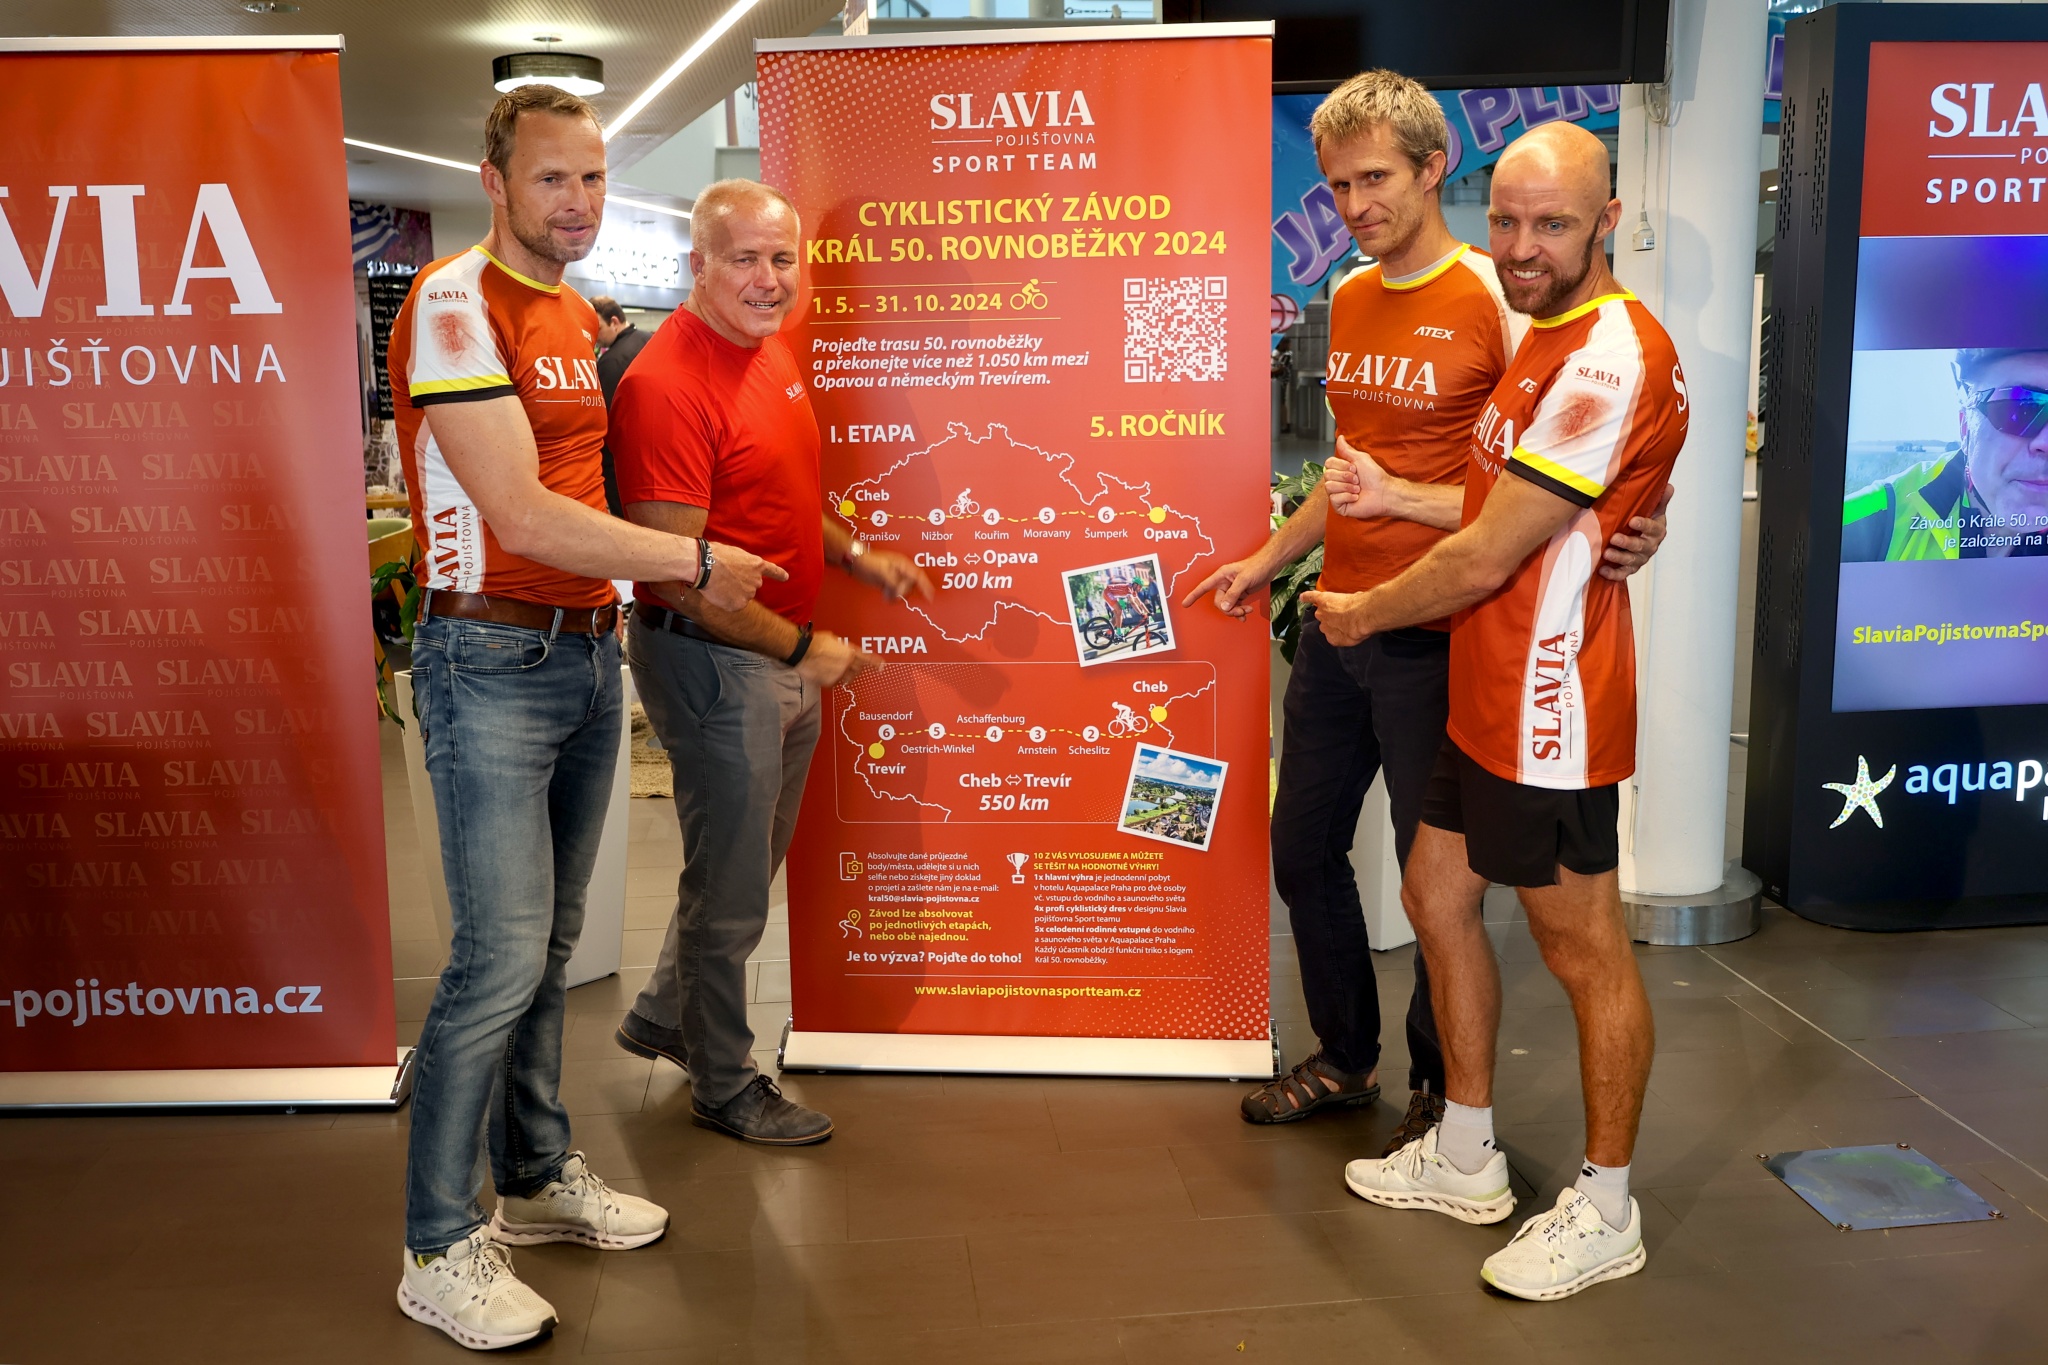 Lyžařské legendy Řezáč s Gjerdalenem ambasadory cyklistického závodu Král 50. rovnoběžky